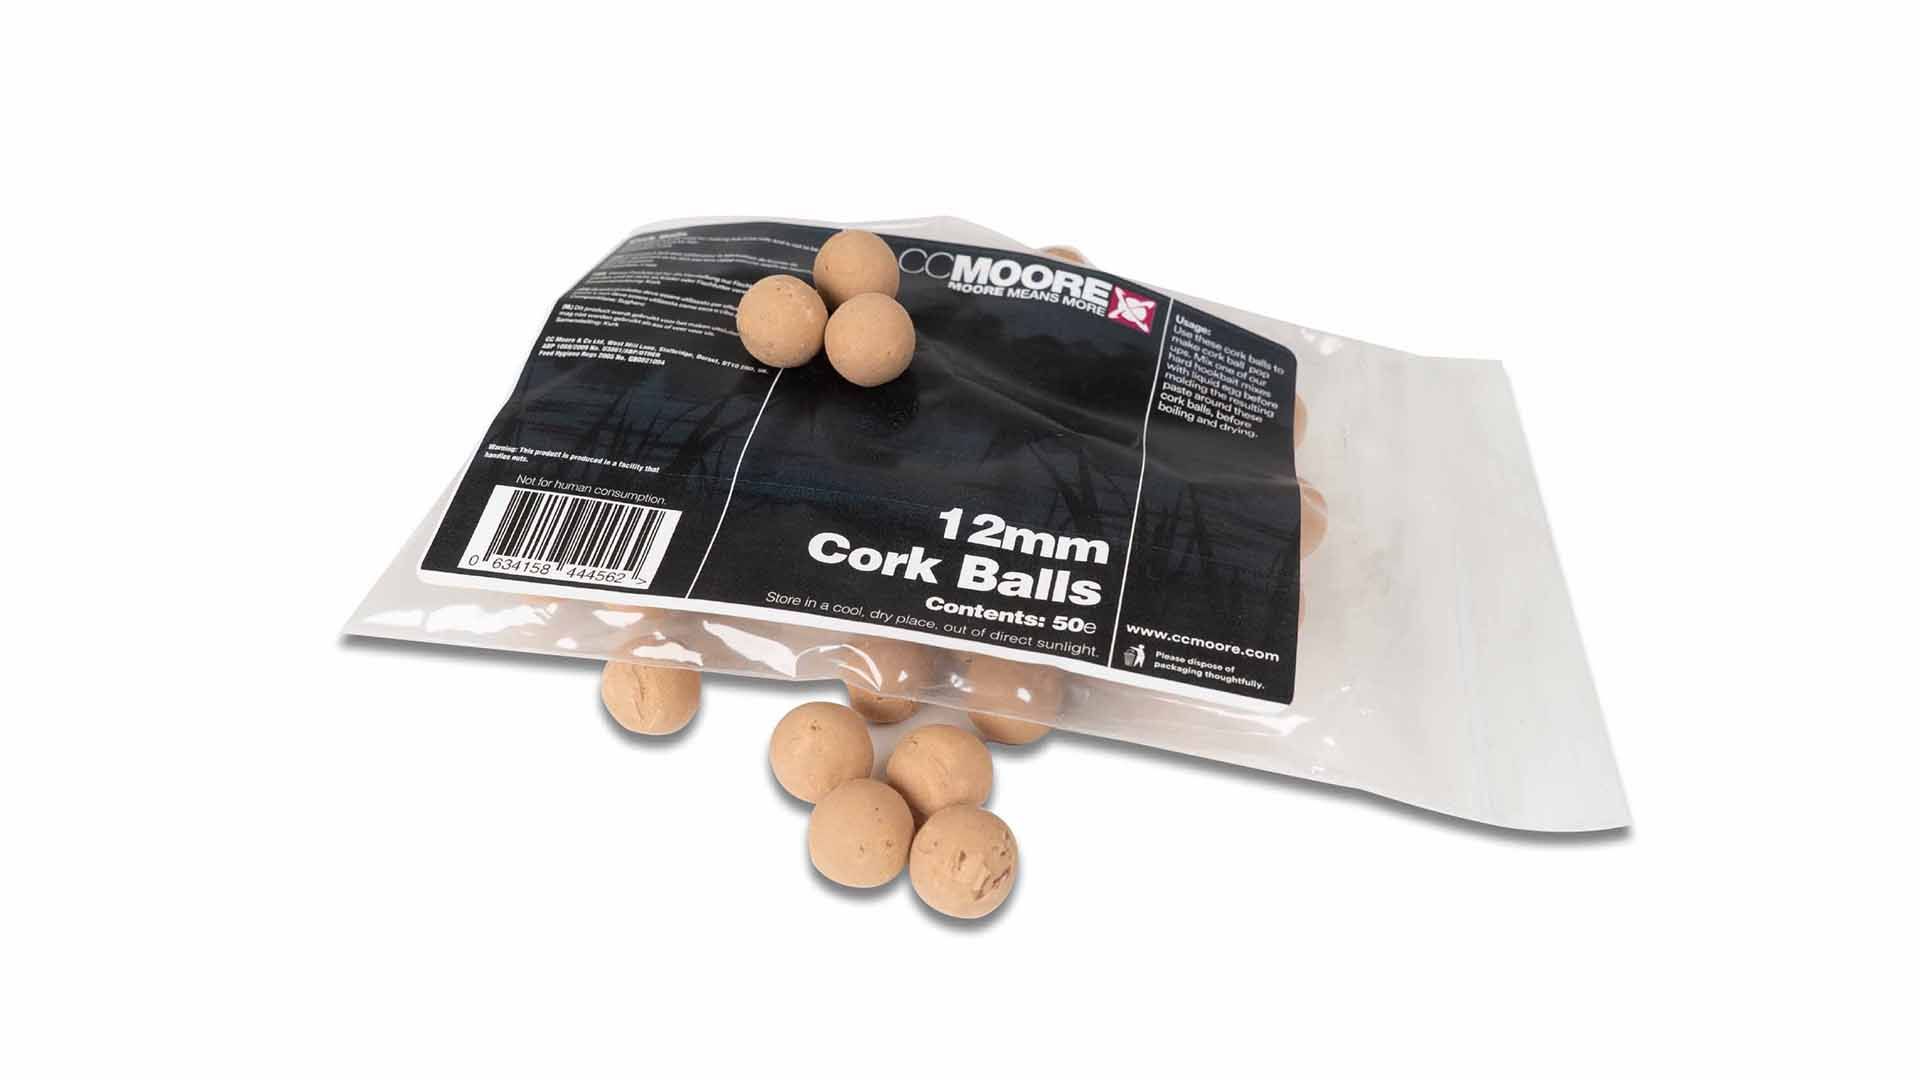 CC Moore různé - Cork Balls 12mm (50ks)